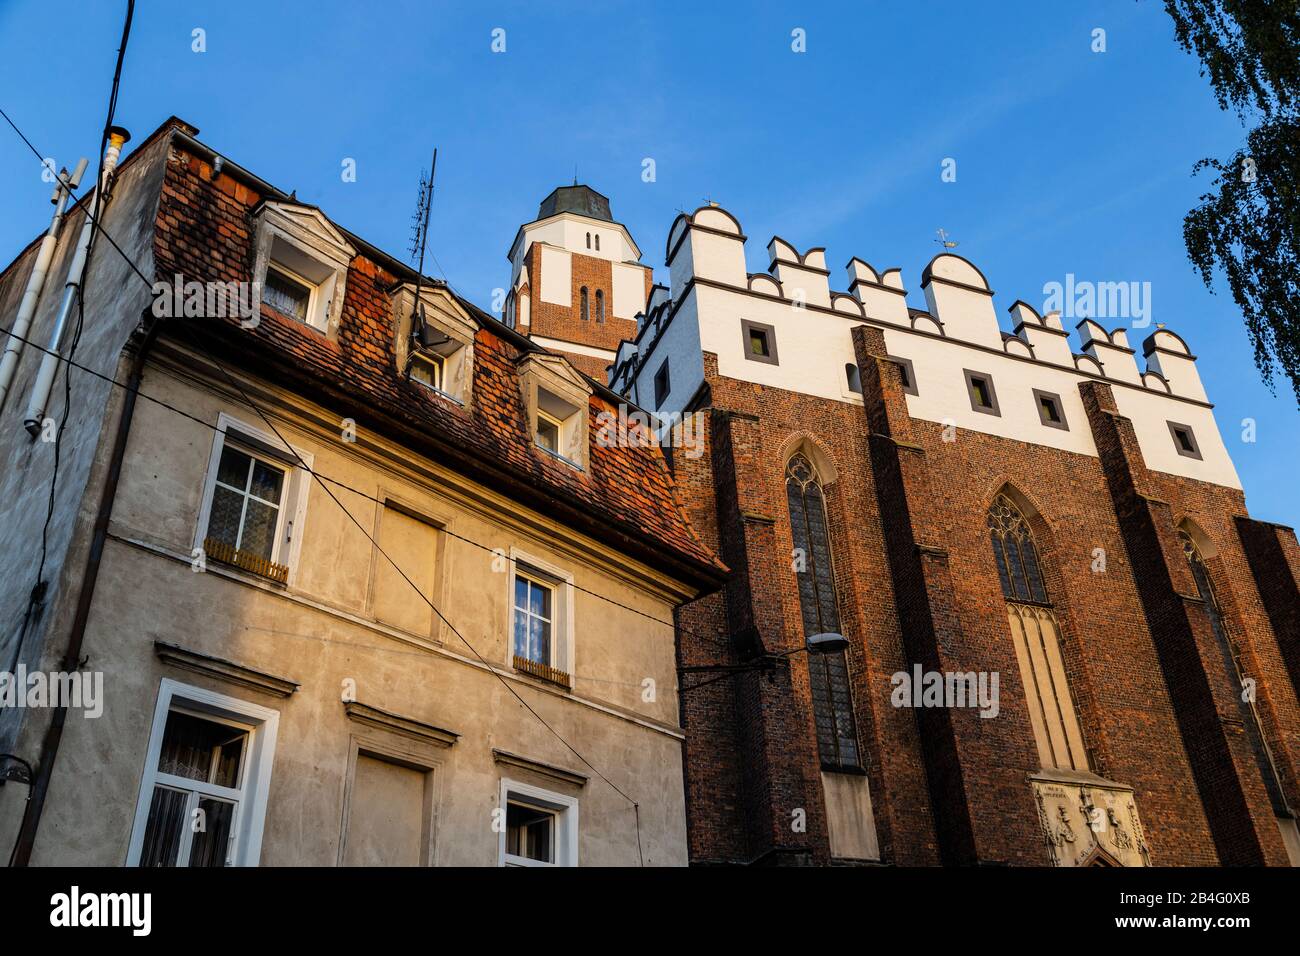 Europa, Polonia, el condado de Nysa, Opole Voivodeship, Paczkow / Patschkau, el ayuntamiento y el centro de la ciudad Foto de stock